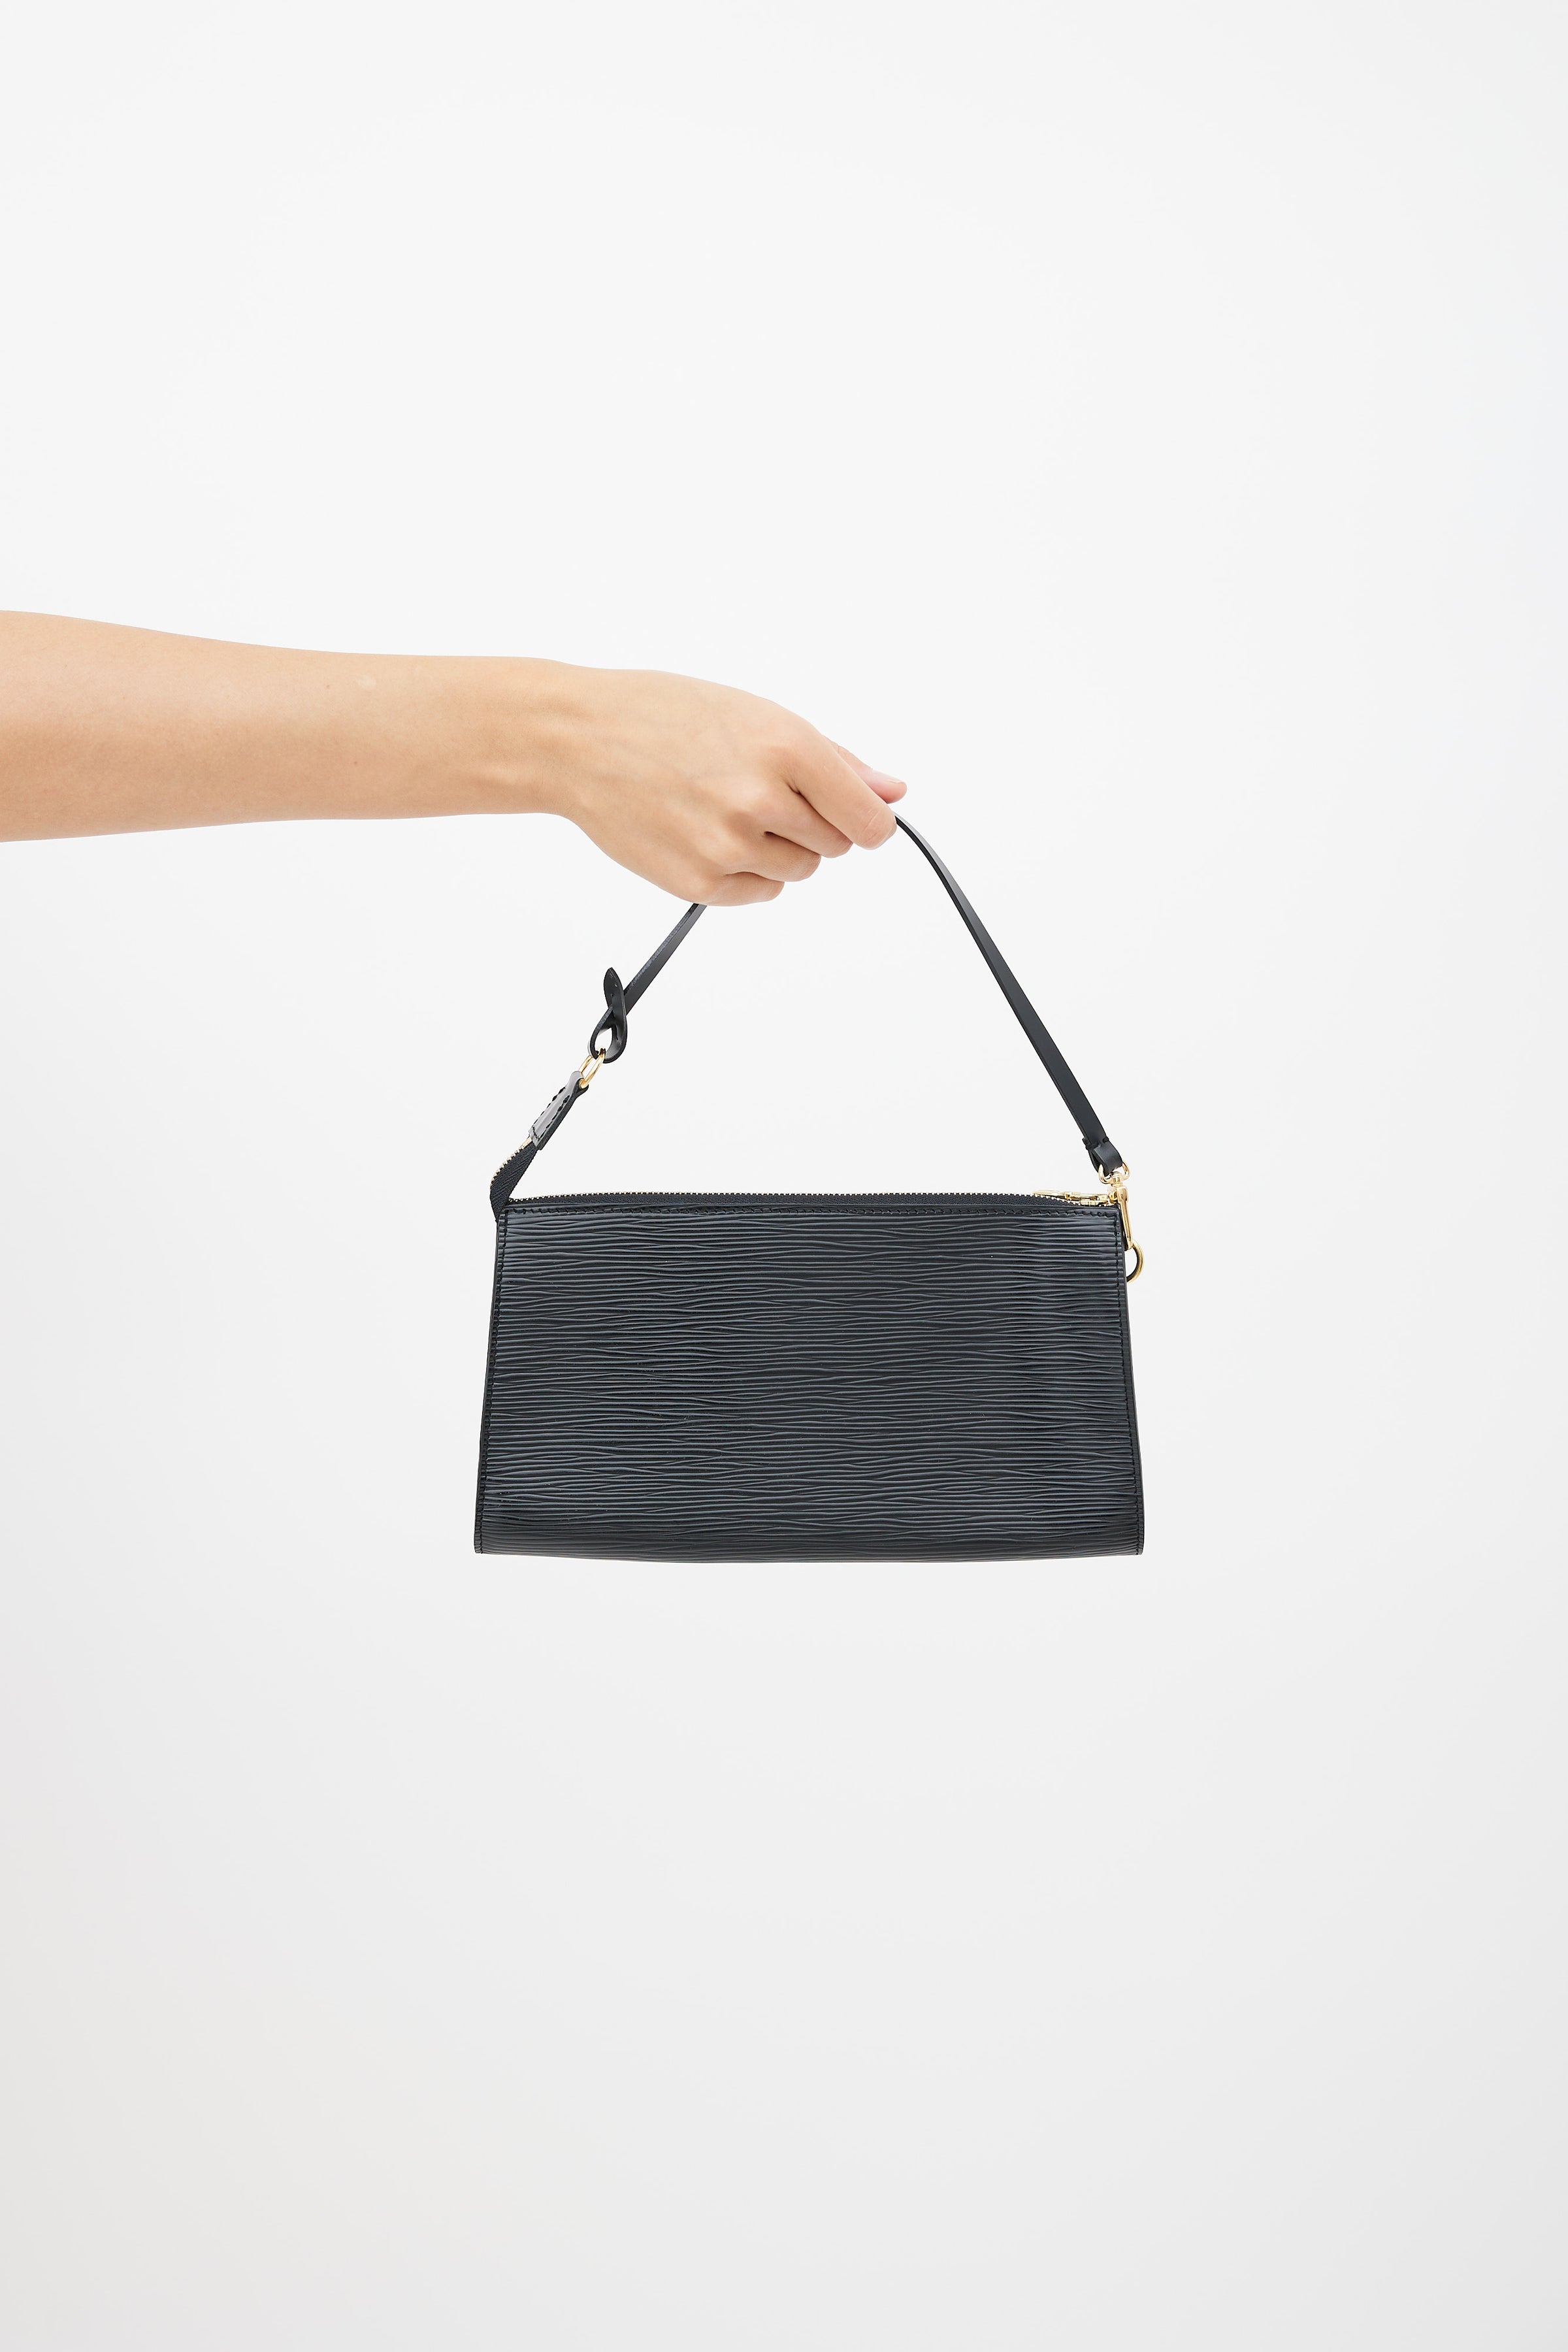 Louis Vuitton Black Epi Leather Pochette Accessoire Bag